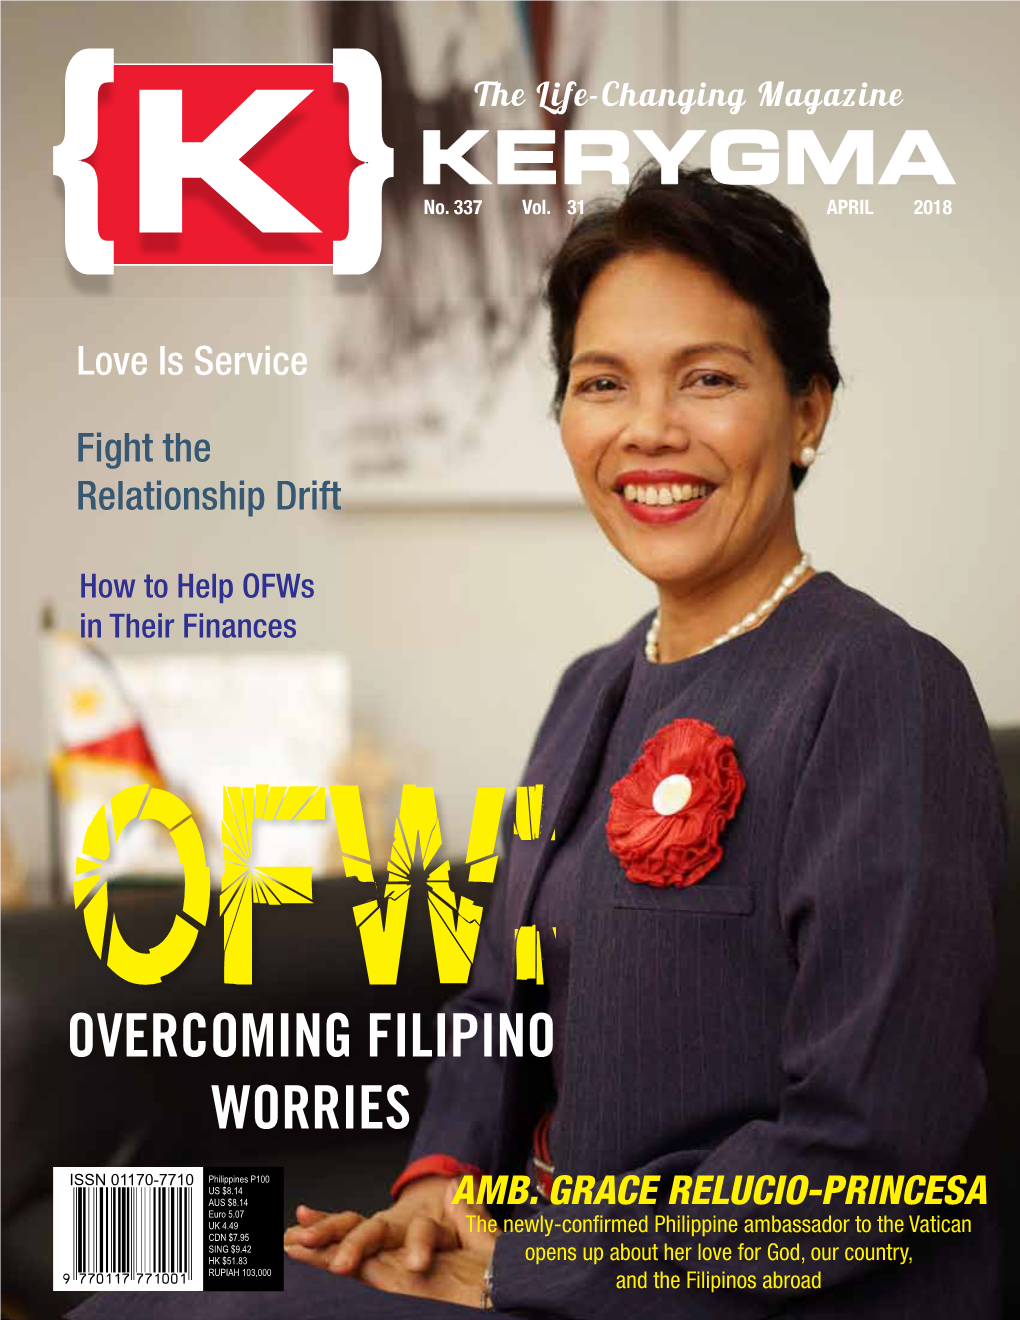 Overcoming Filipino Worries